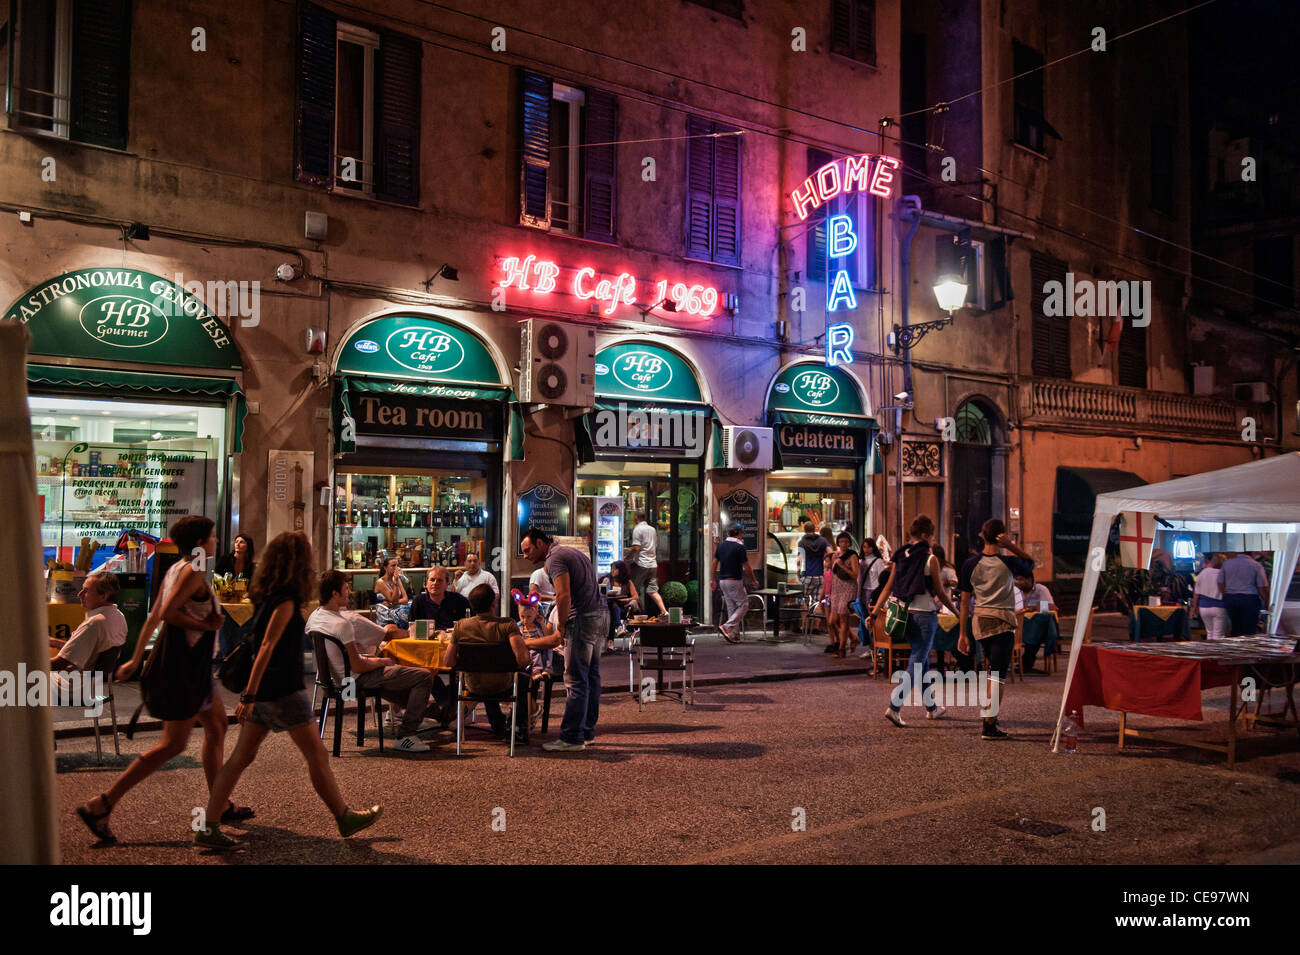 Les gens boire et manger dans la rue des bars et restaurants de nuit. Vieille ville de Gênes (Genova), Italien Italie Banque D'Images